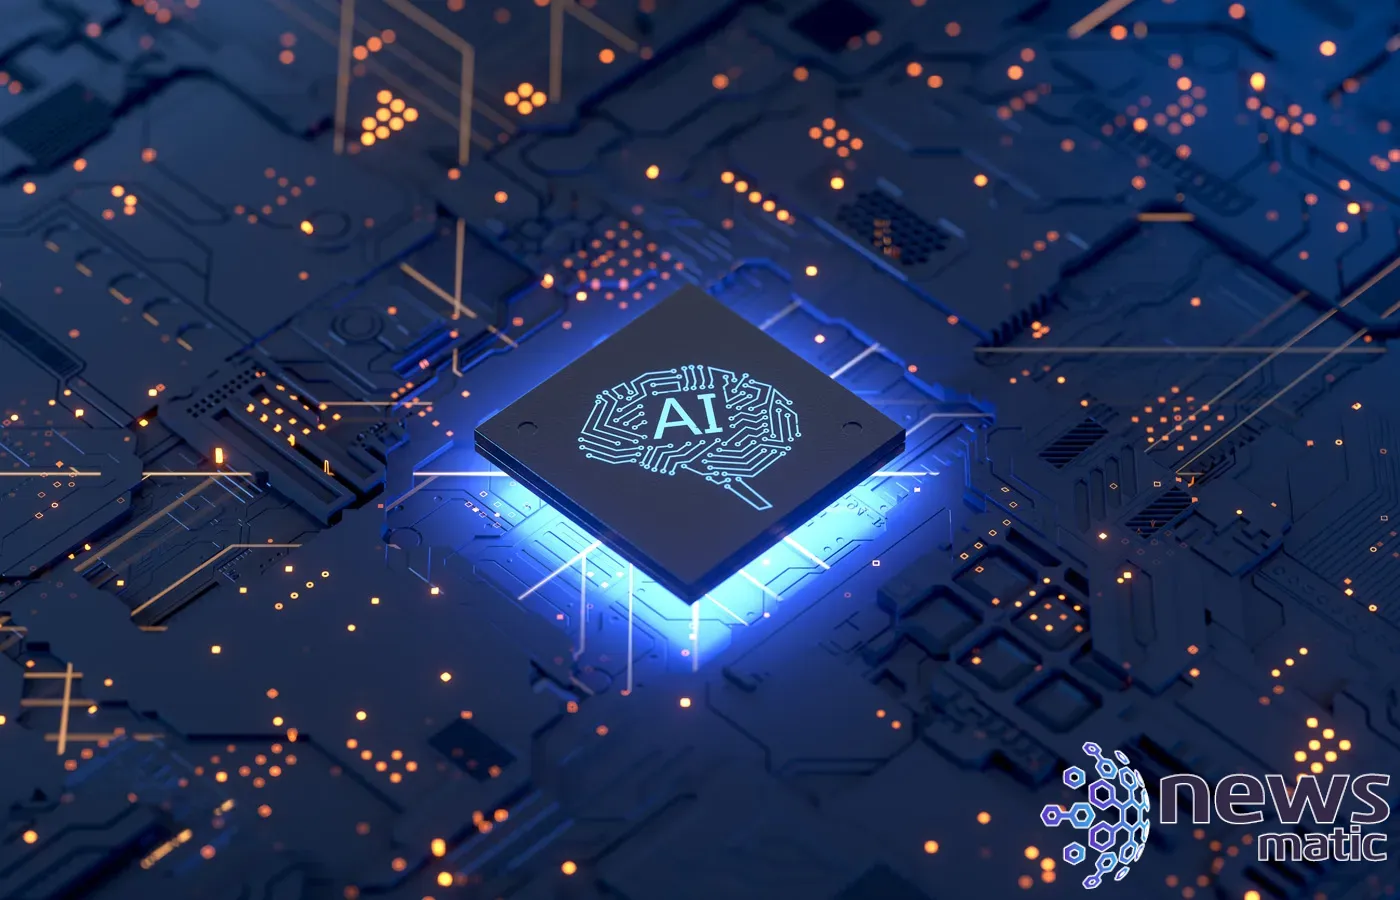 Inversión millonaria en chips de IA: el Reino Unido lidera la revolución tecnológica - Inteligencia artificial | Imagen 1 Newsmatic